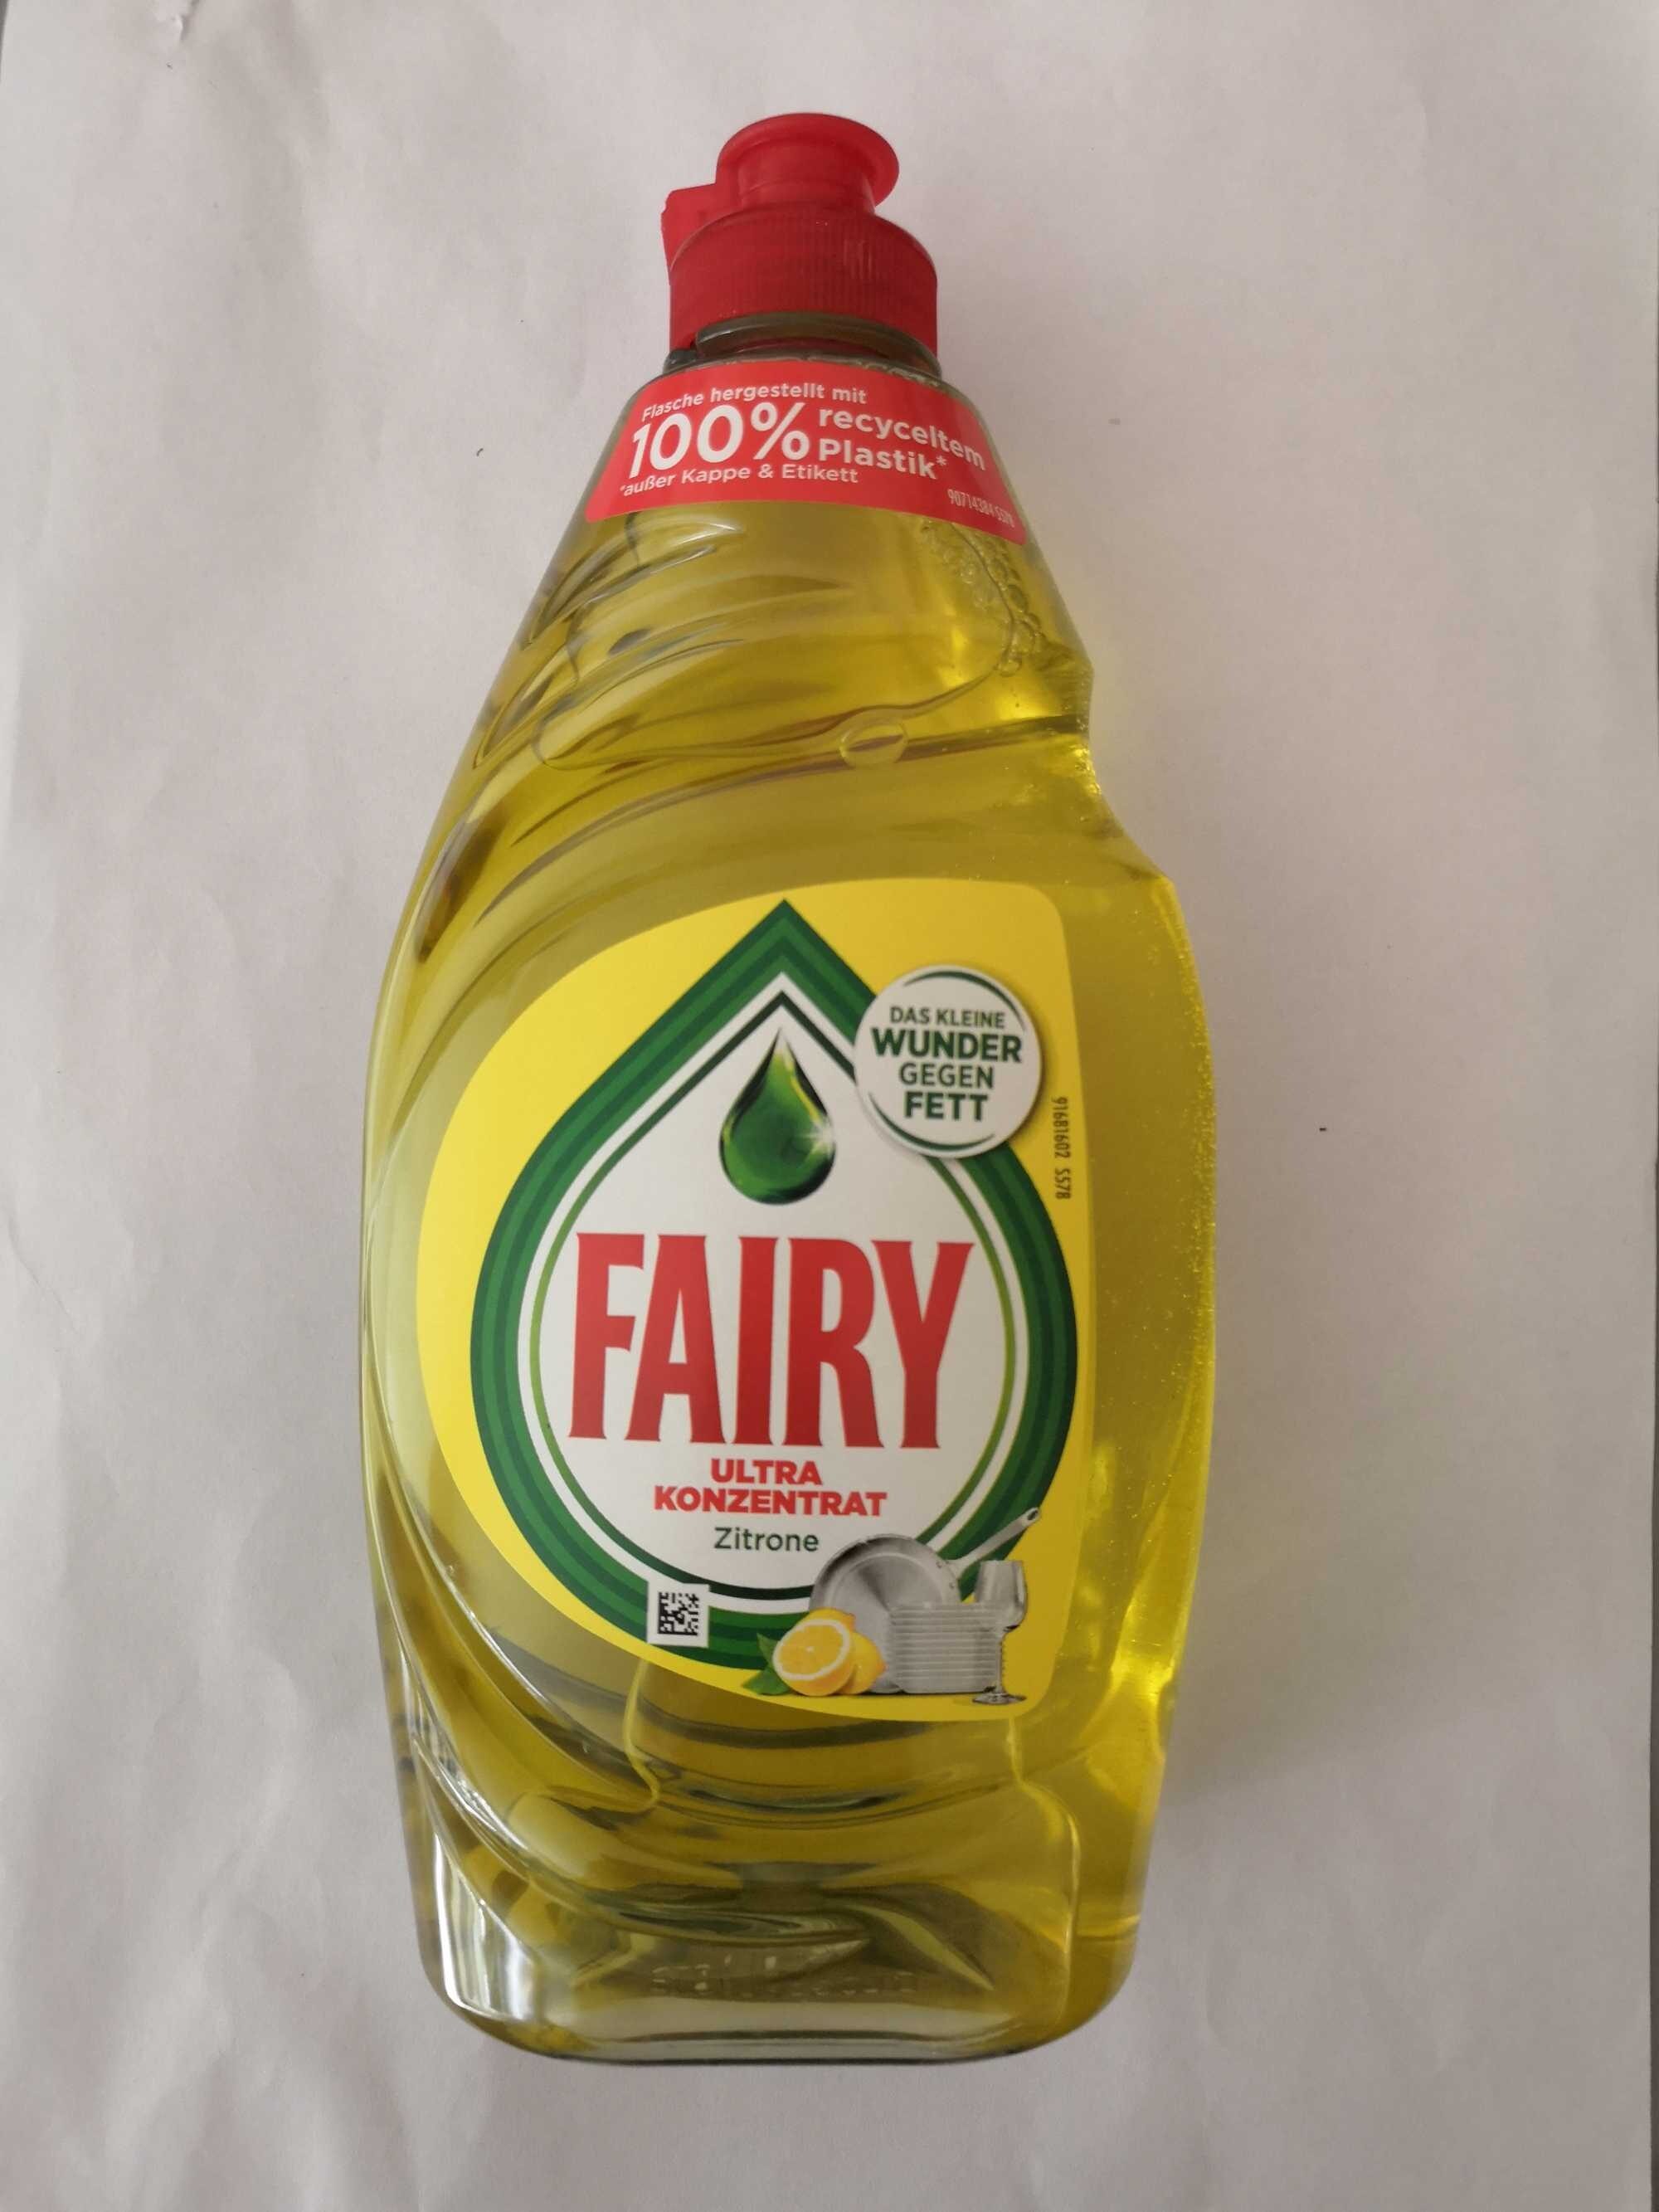 Fairy Ultra Konzentrat Zitrone - Product - de